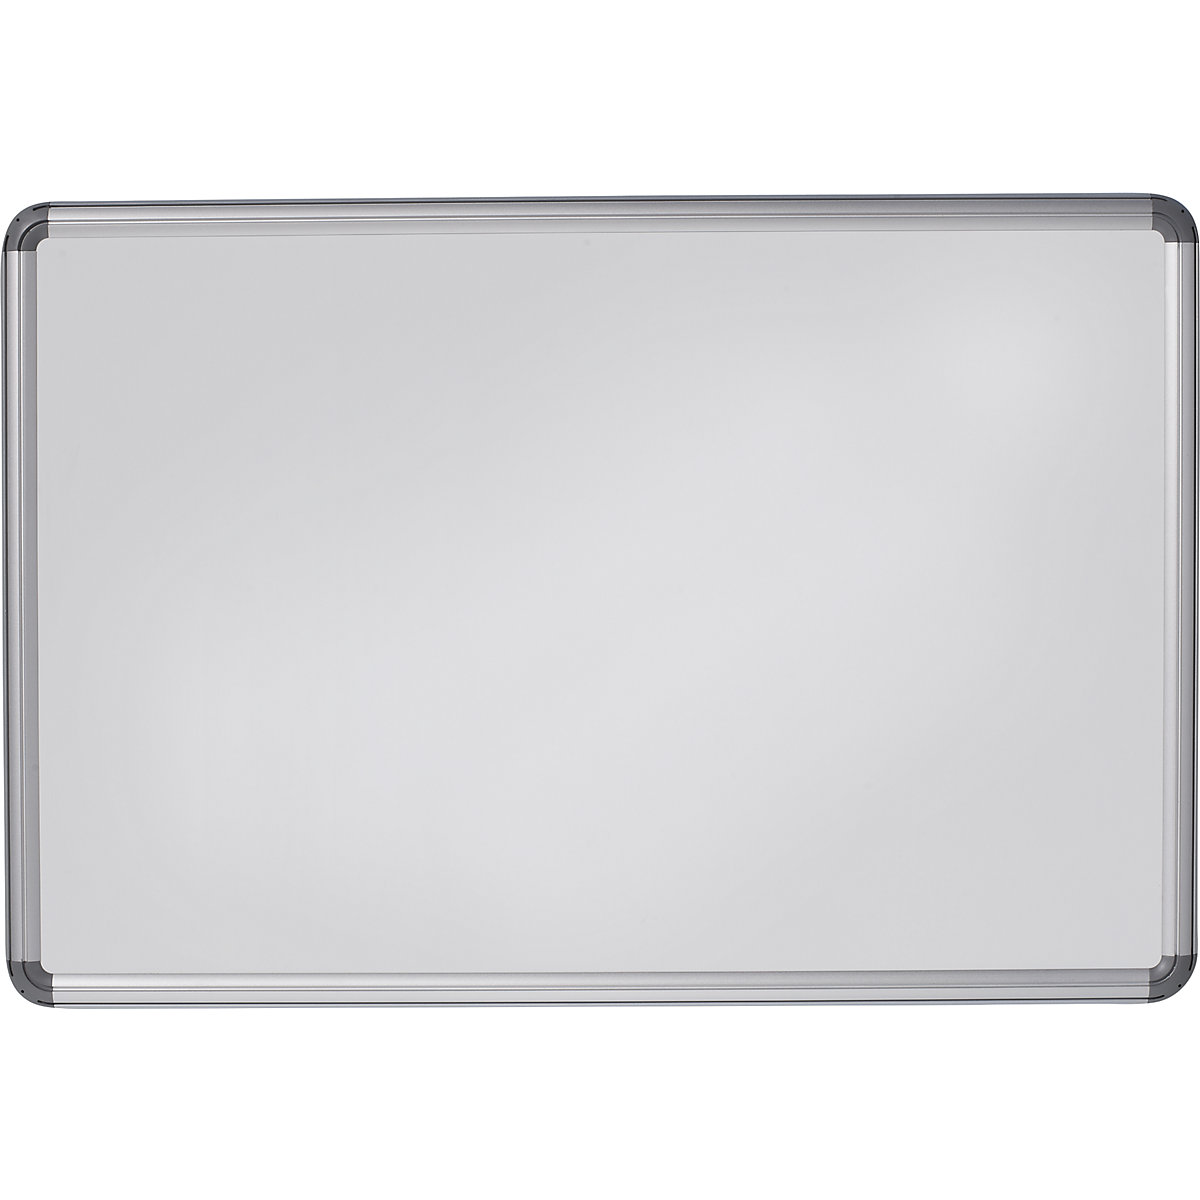 Designerska tablica ścienna – eurokraft pro, blacha stalowa, lakierowana, szer. x wys. 900 x 600 mm, biały-9